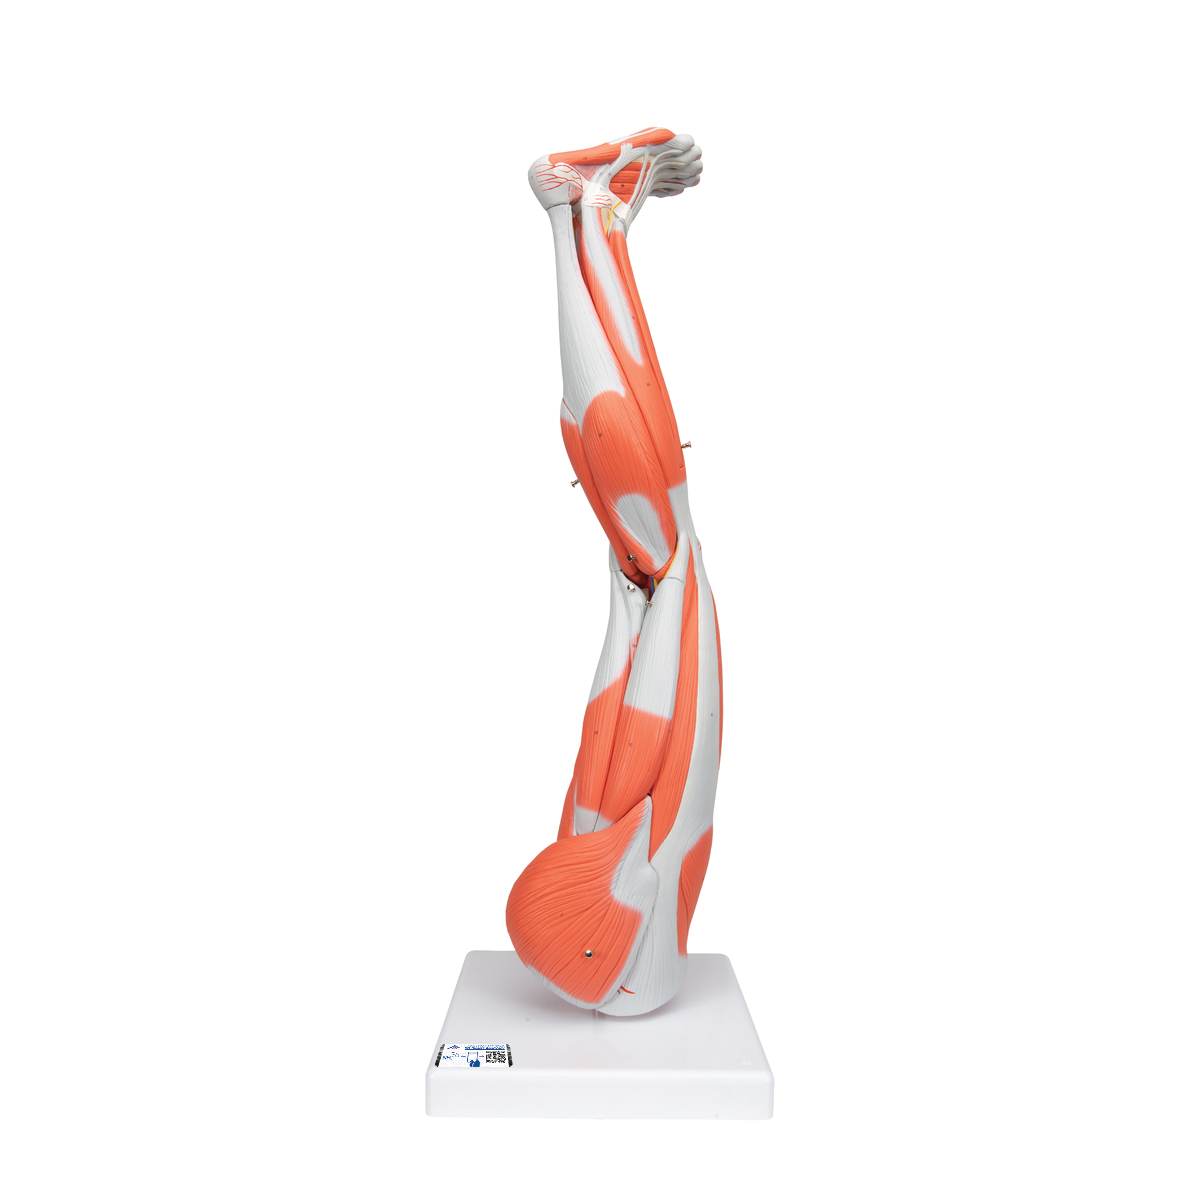 Beinmuskel Modell, 9-teilig - 3B Smart Anatomy, Bestellnummer 1000351, M20, 3B Scientific